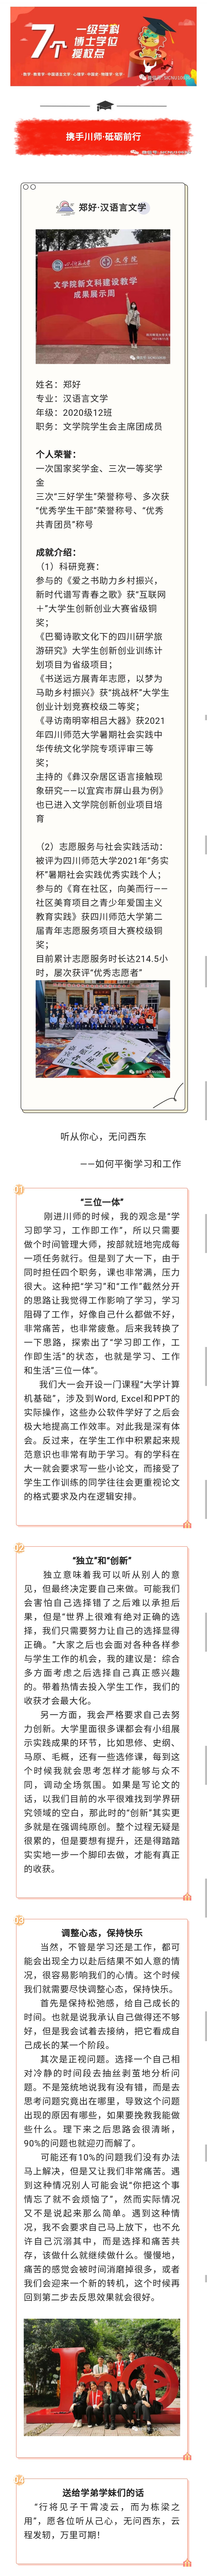 汉语言文学-郑好.jpg